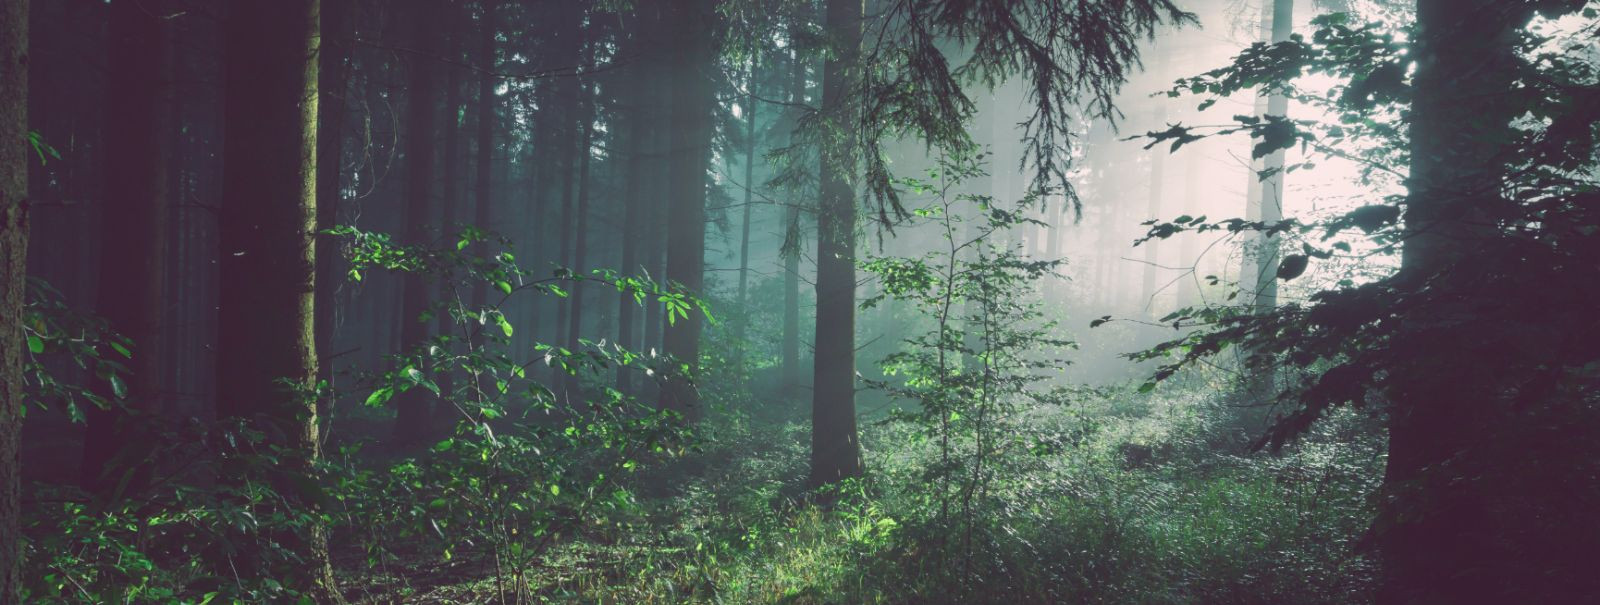 Hõrendamine on metsamajanduse praktika, mis hõlmab puude selektiivset eemaldamist, et parandada metsa tervist ja tootlikkust. Konkurentsi vähendamine ressurssid